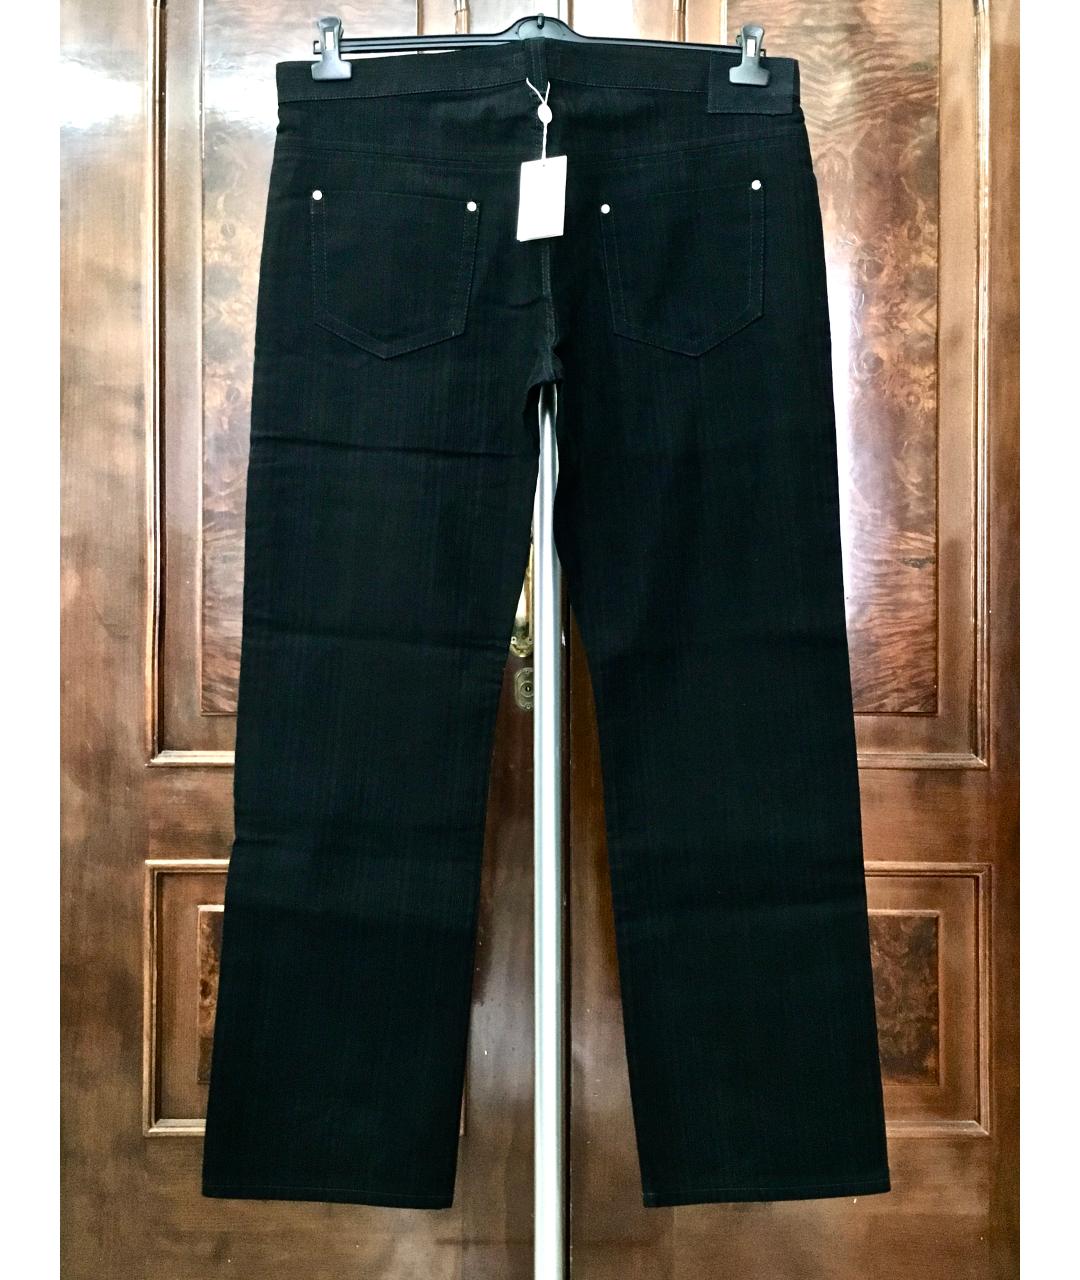 BILANCIONI Черные хлопковые прямые джинсы, фото 4